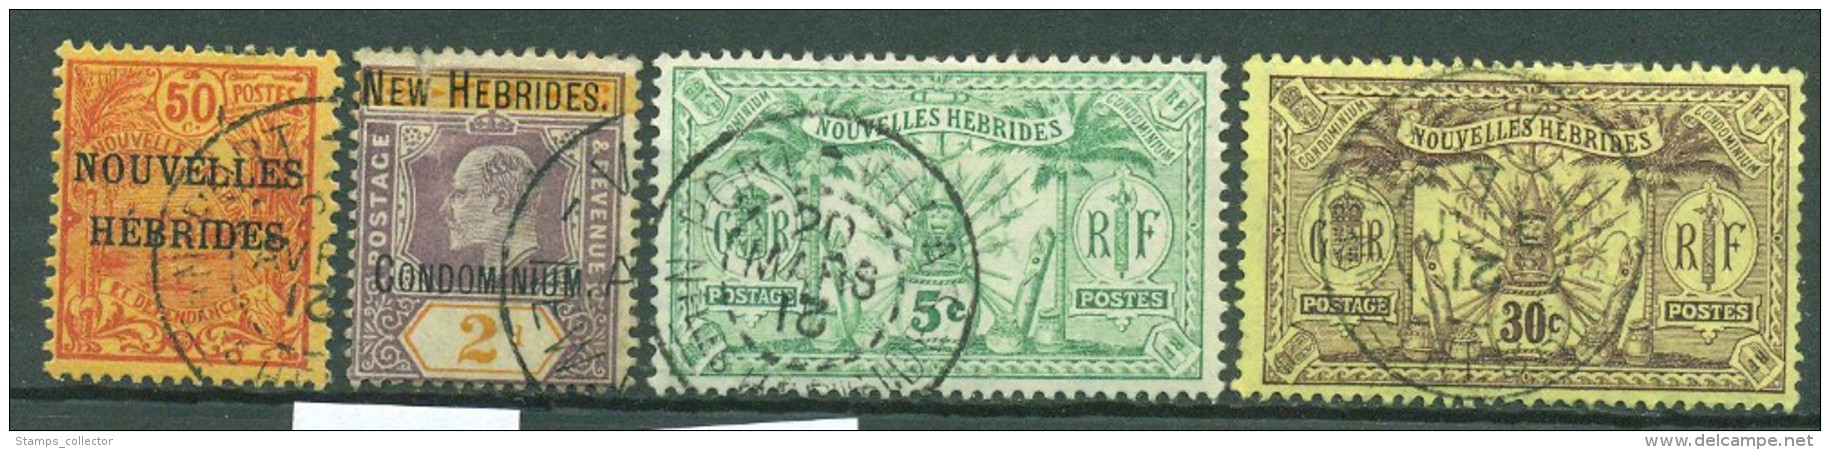 NEW HEBRIDES. 4 Old Stamps. Used - Oblitérés